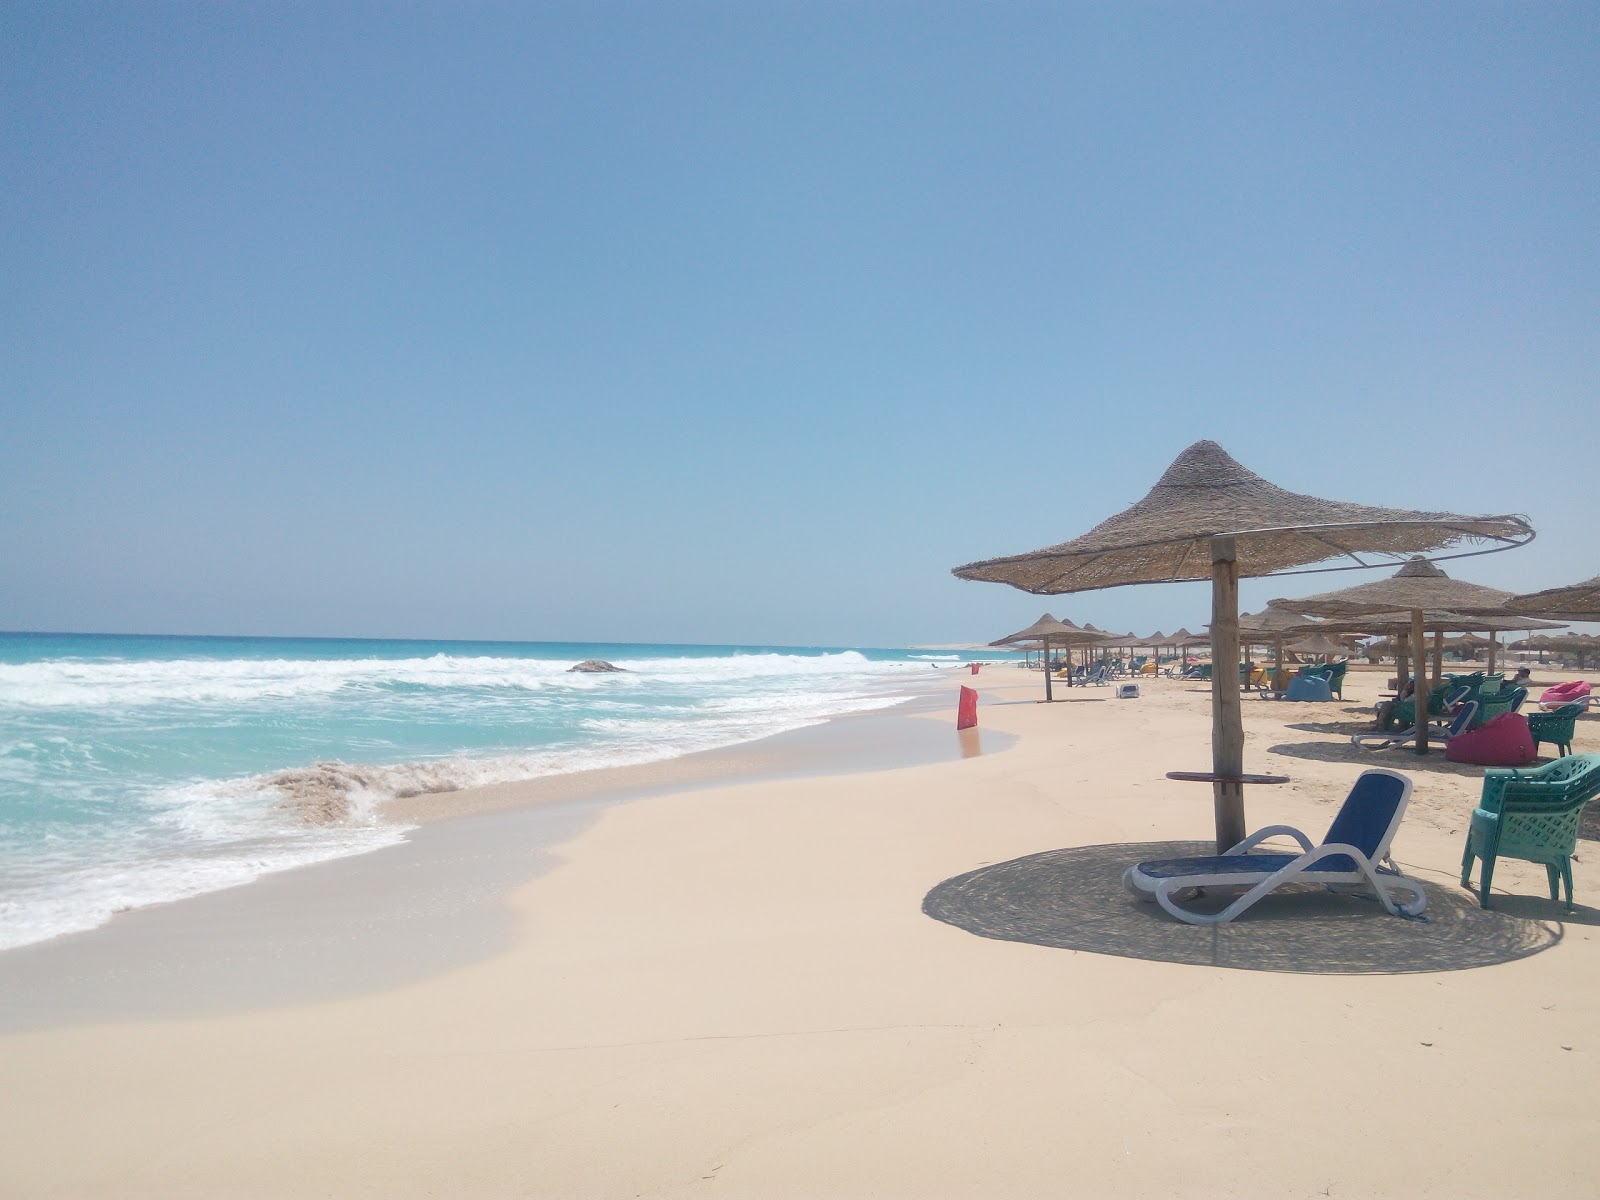 Elhana Beach Resort Area'in fotoğrafı geniş plaj ile birlikte